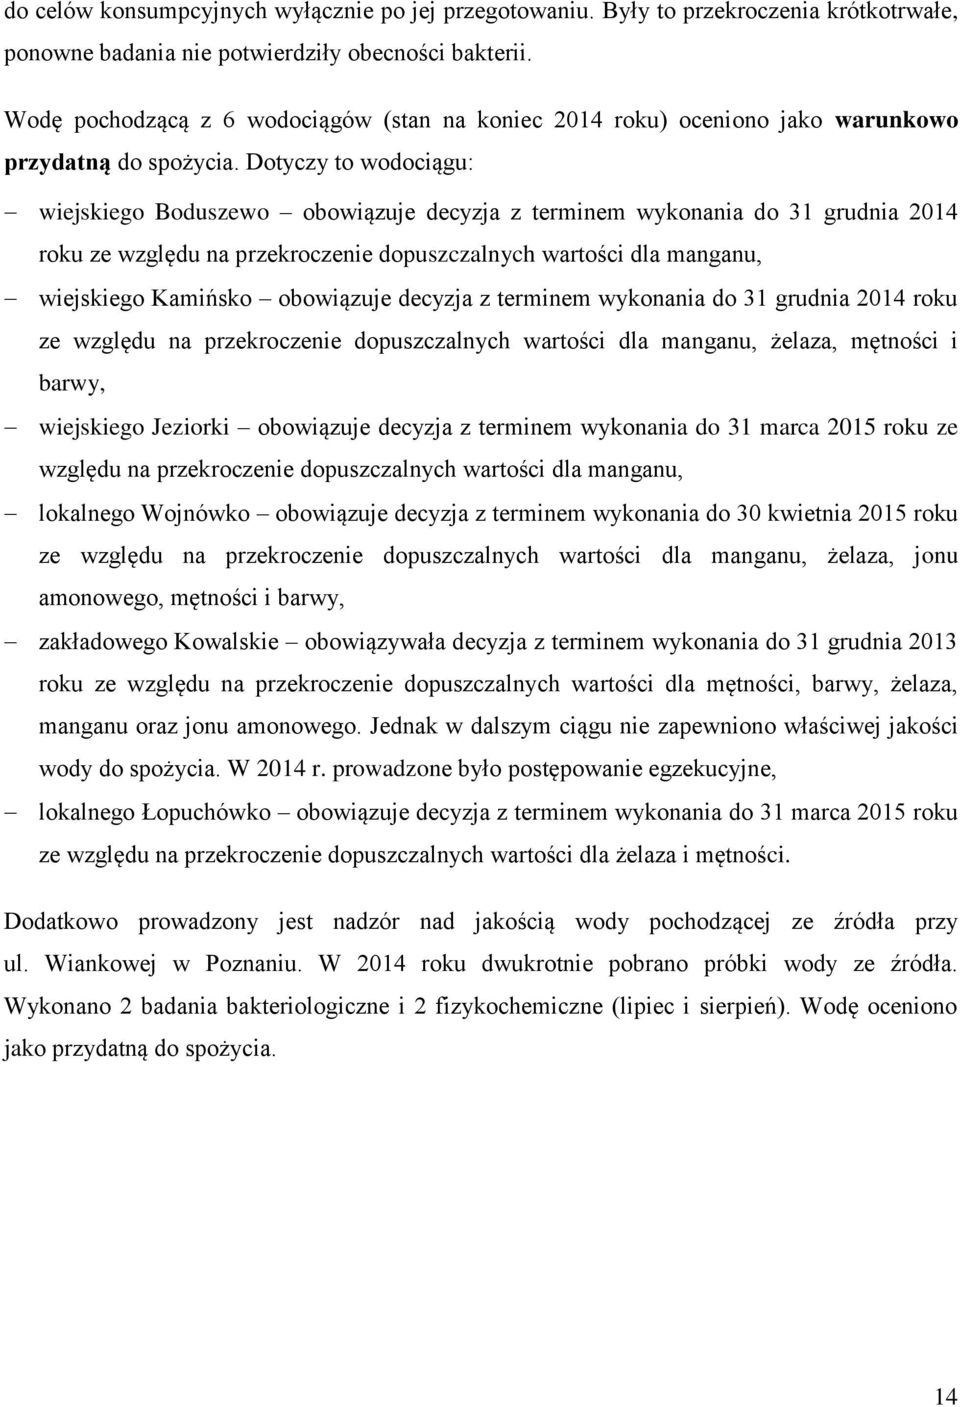 Dotyczy to wodociągu: wiejskiego Boduszewo obowiązuje decyzja z terminem wykonania do 31 grudnia 2014 roku ze względu na przekroczenie dopuszczalnych wartości dla manganu, wiejskiego Kamińsko